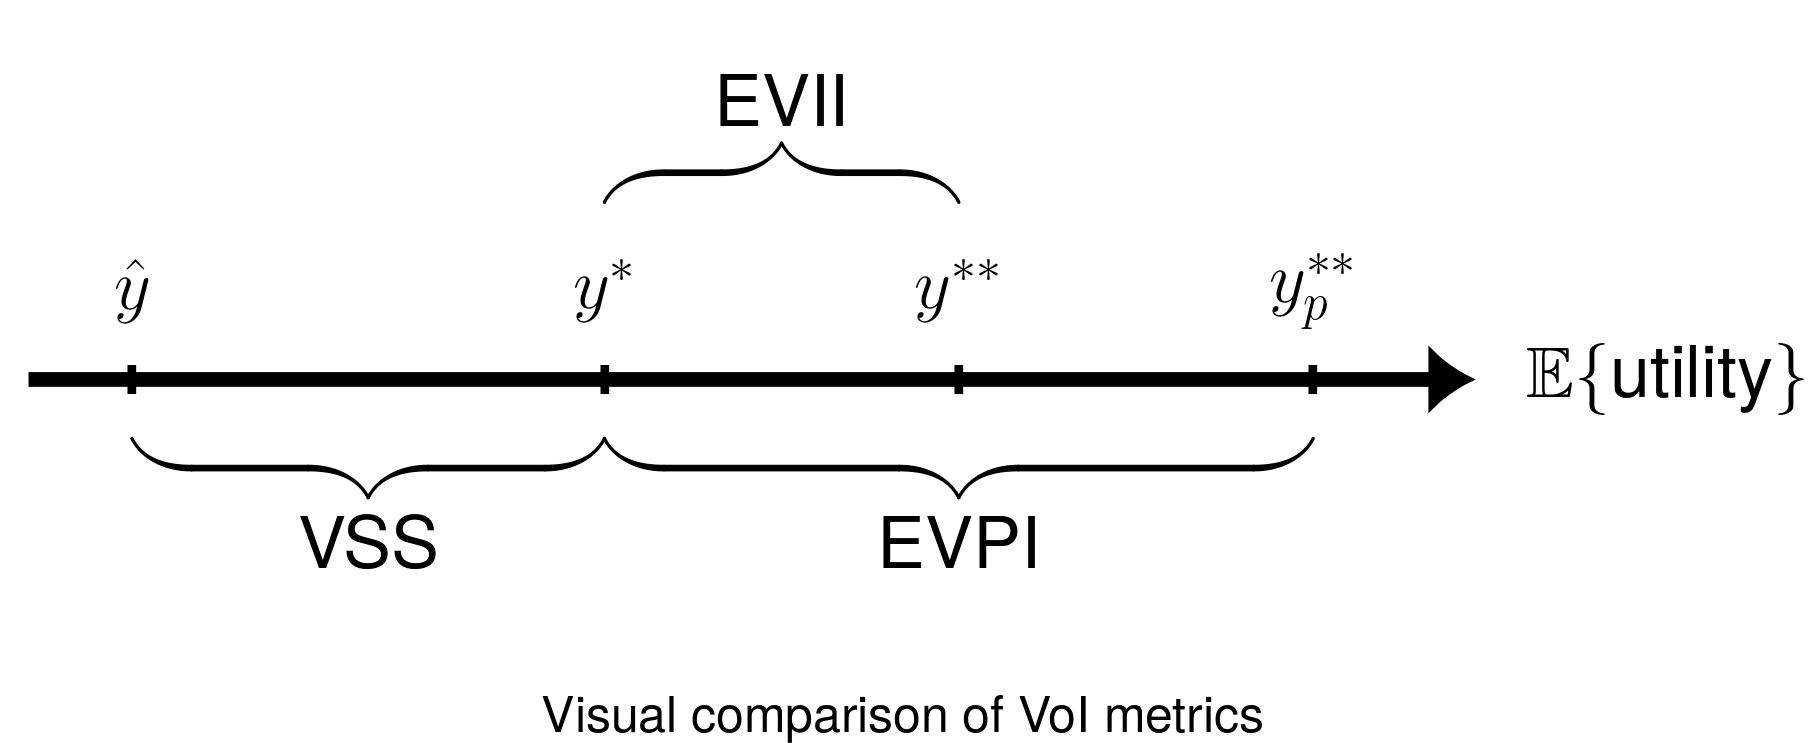 Visual comparison of VoI metrics